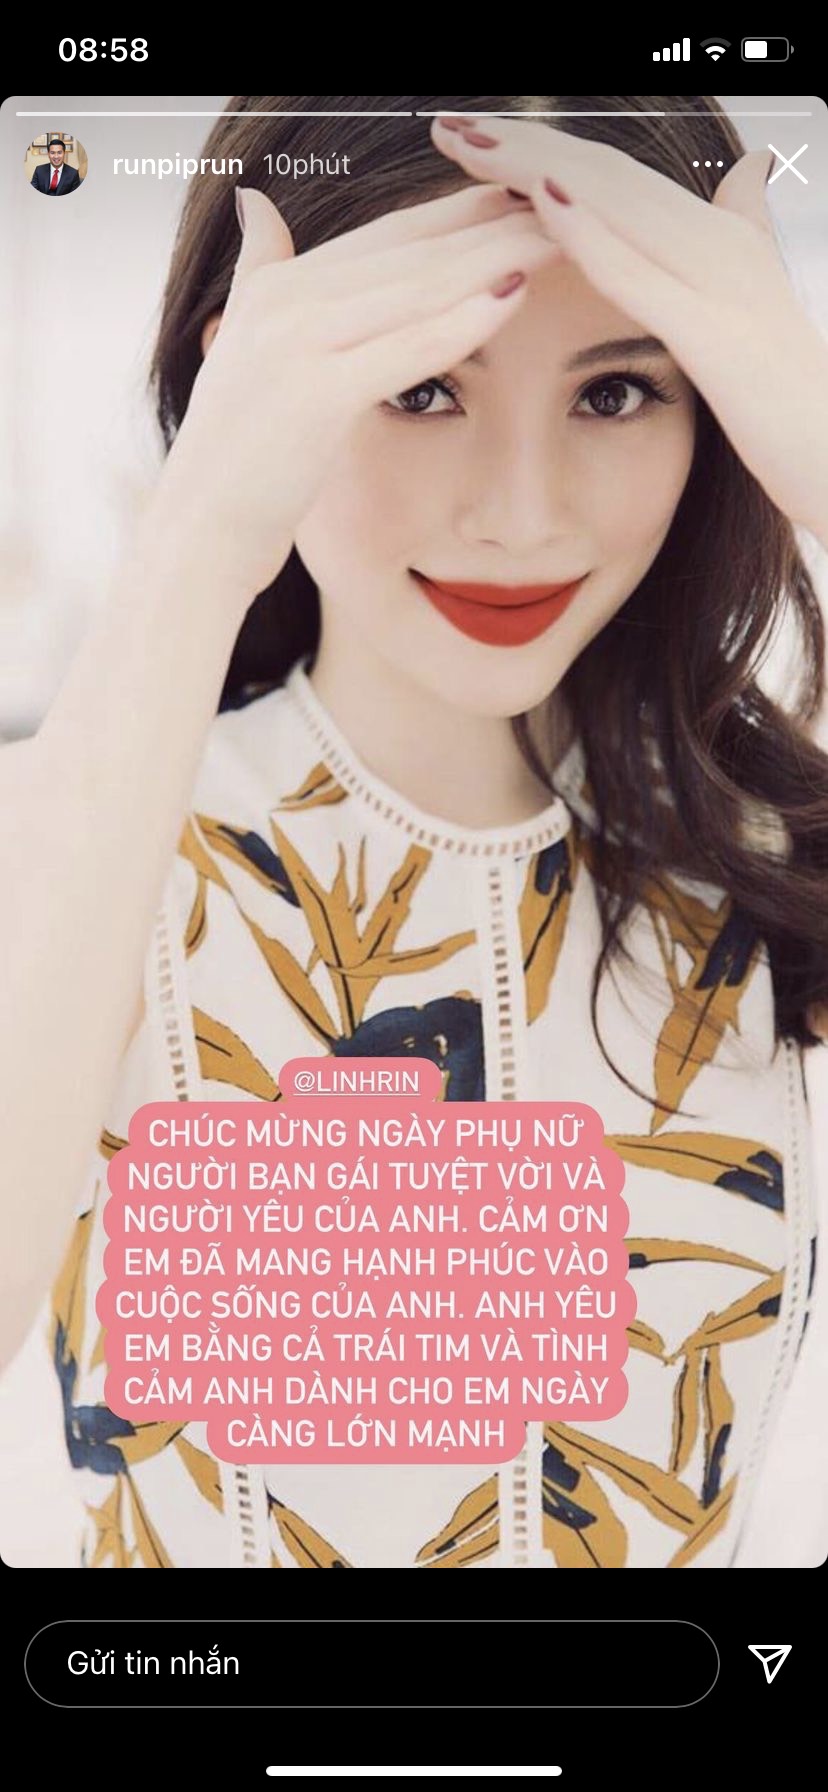 Phillip Nguyễn công khai tỏ tình Linh Rin nhân ngày Phụ nữ Việt Nam.